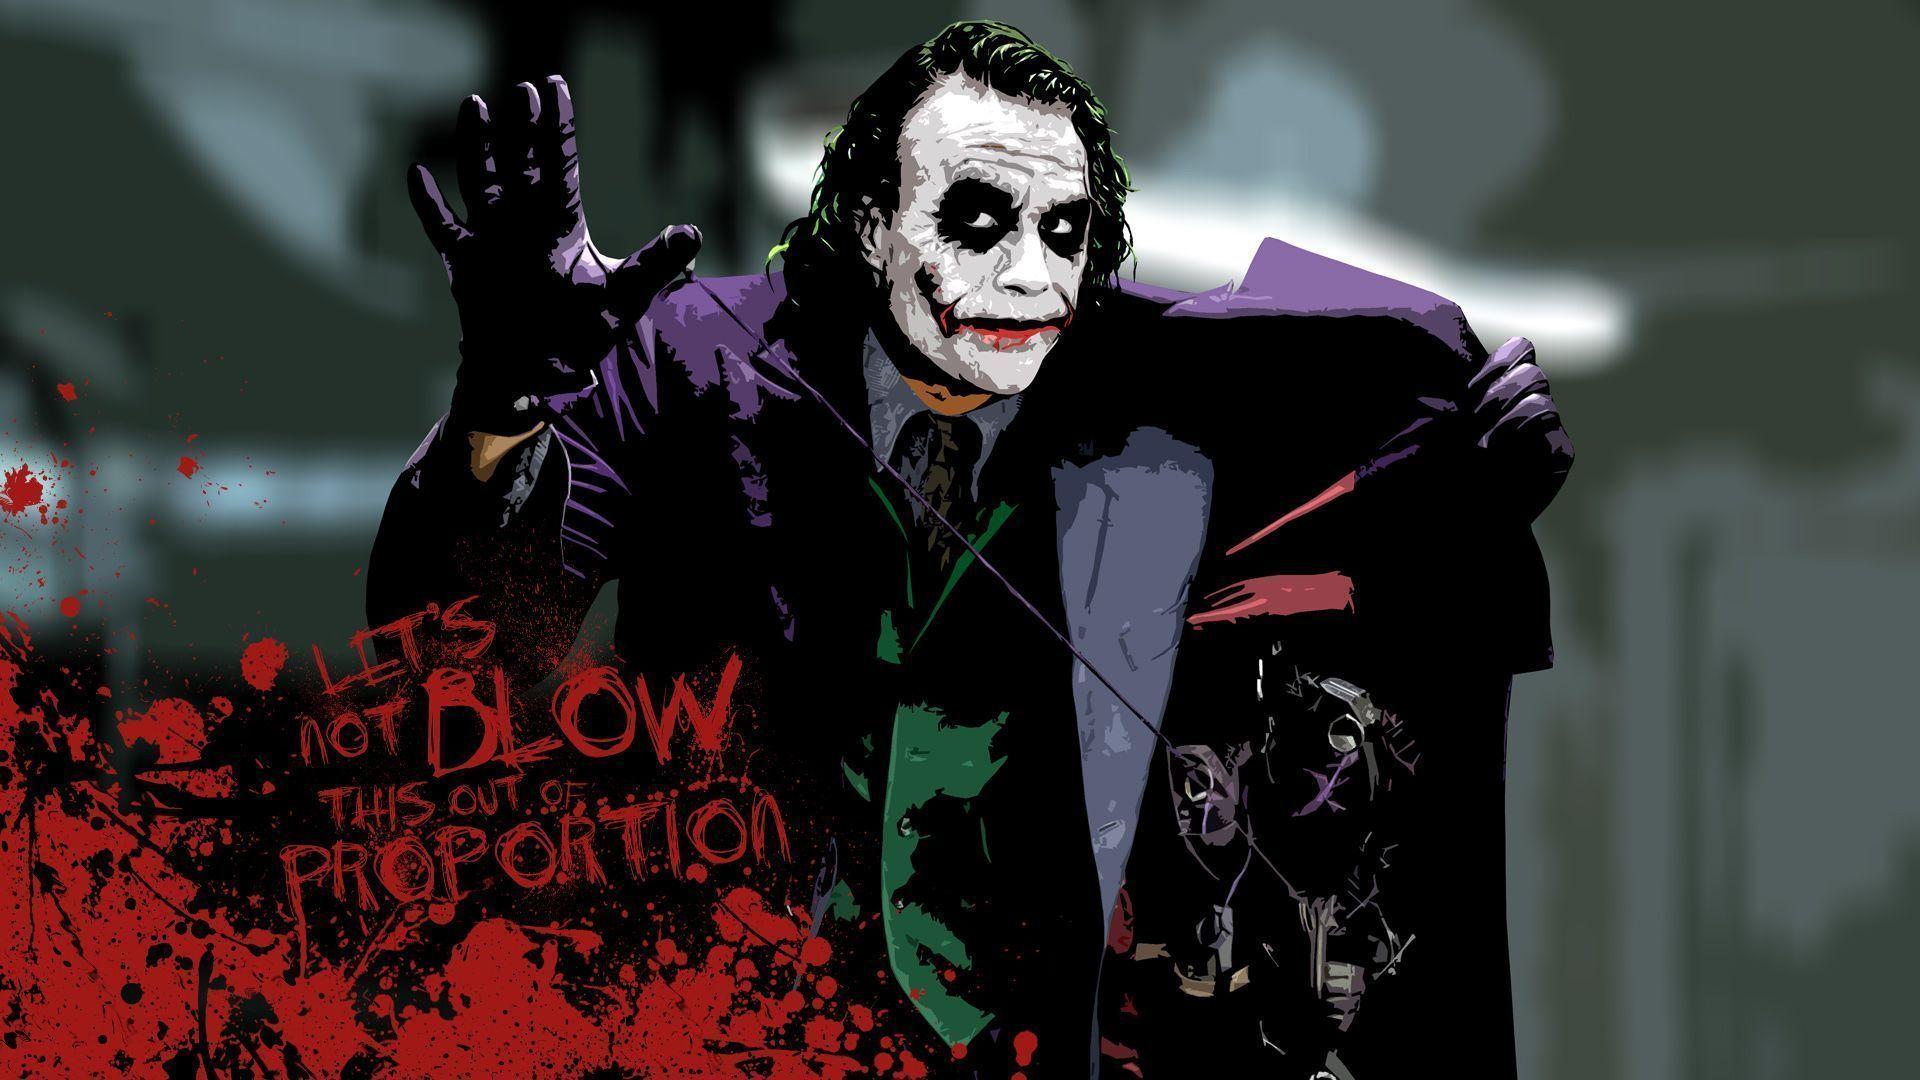 Heath Ledger Joker Wallpaper. Image Wallpaper